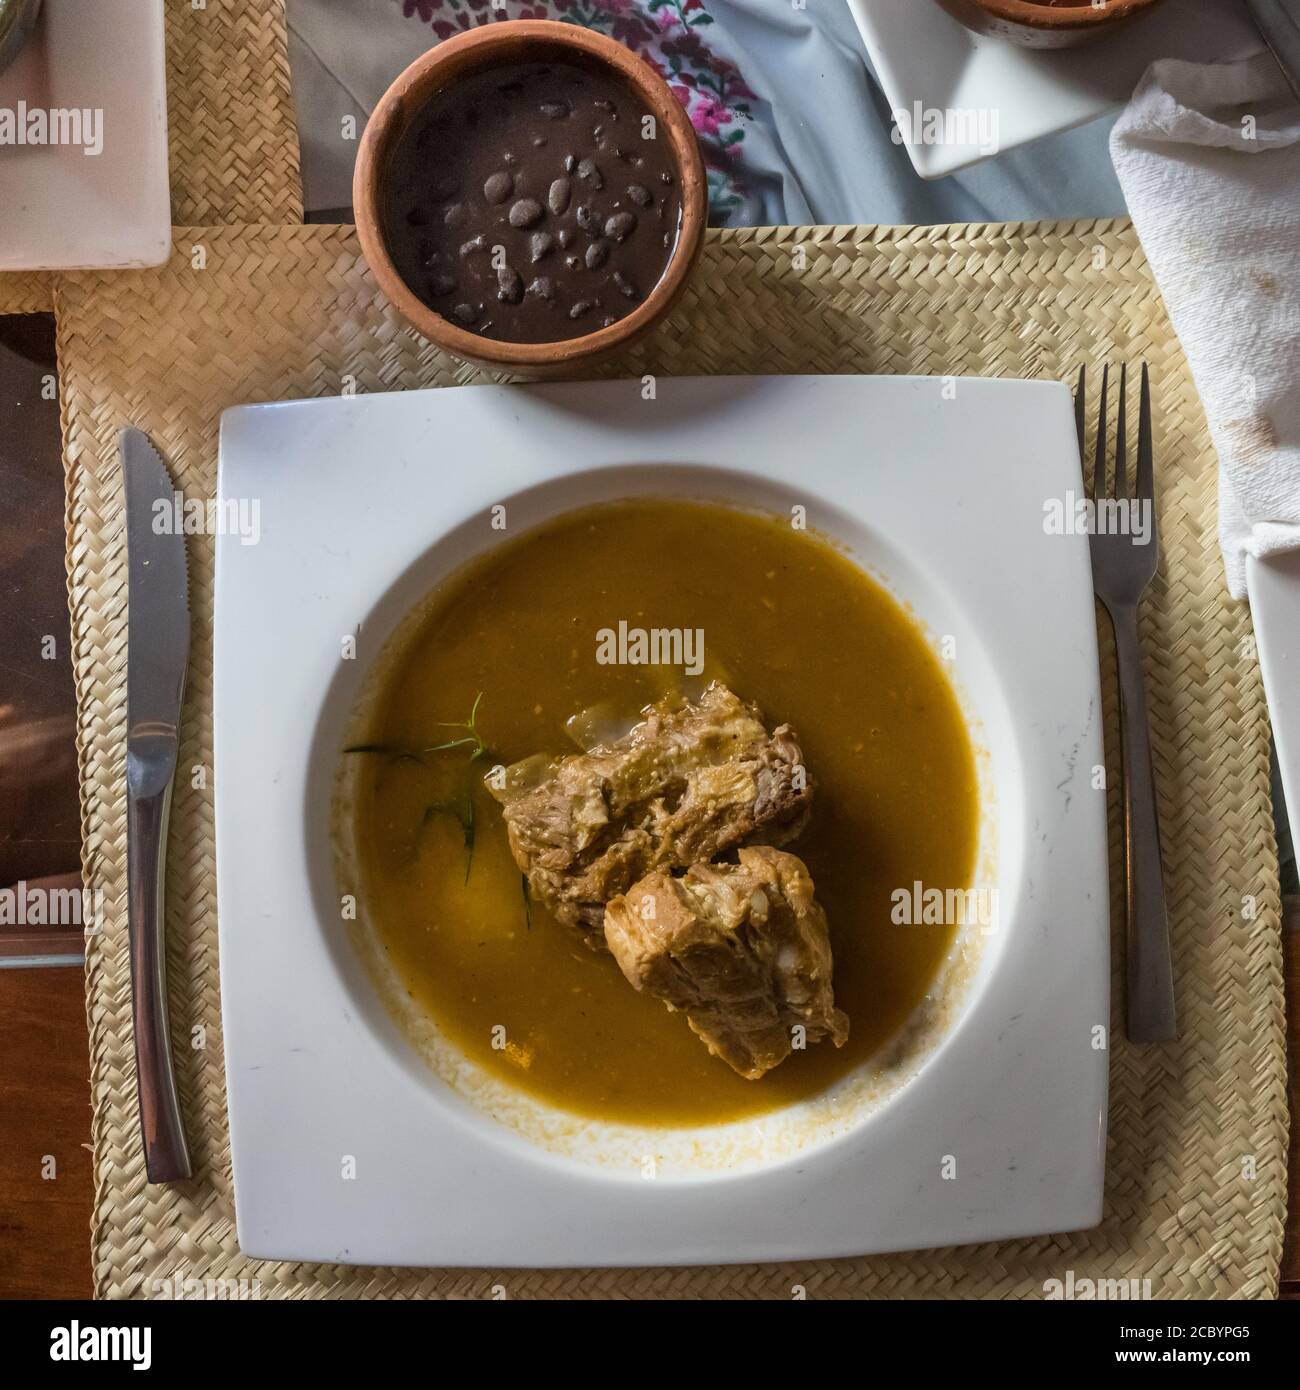 Costillas de puerco or pork ribs with black beans.  Oaxaca, Mexico. Stock Photo